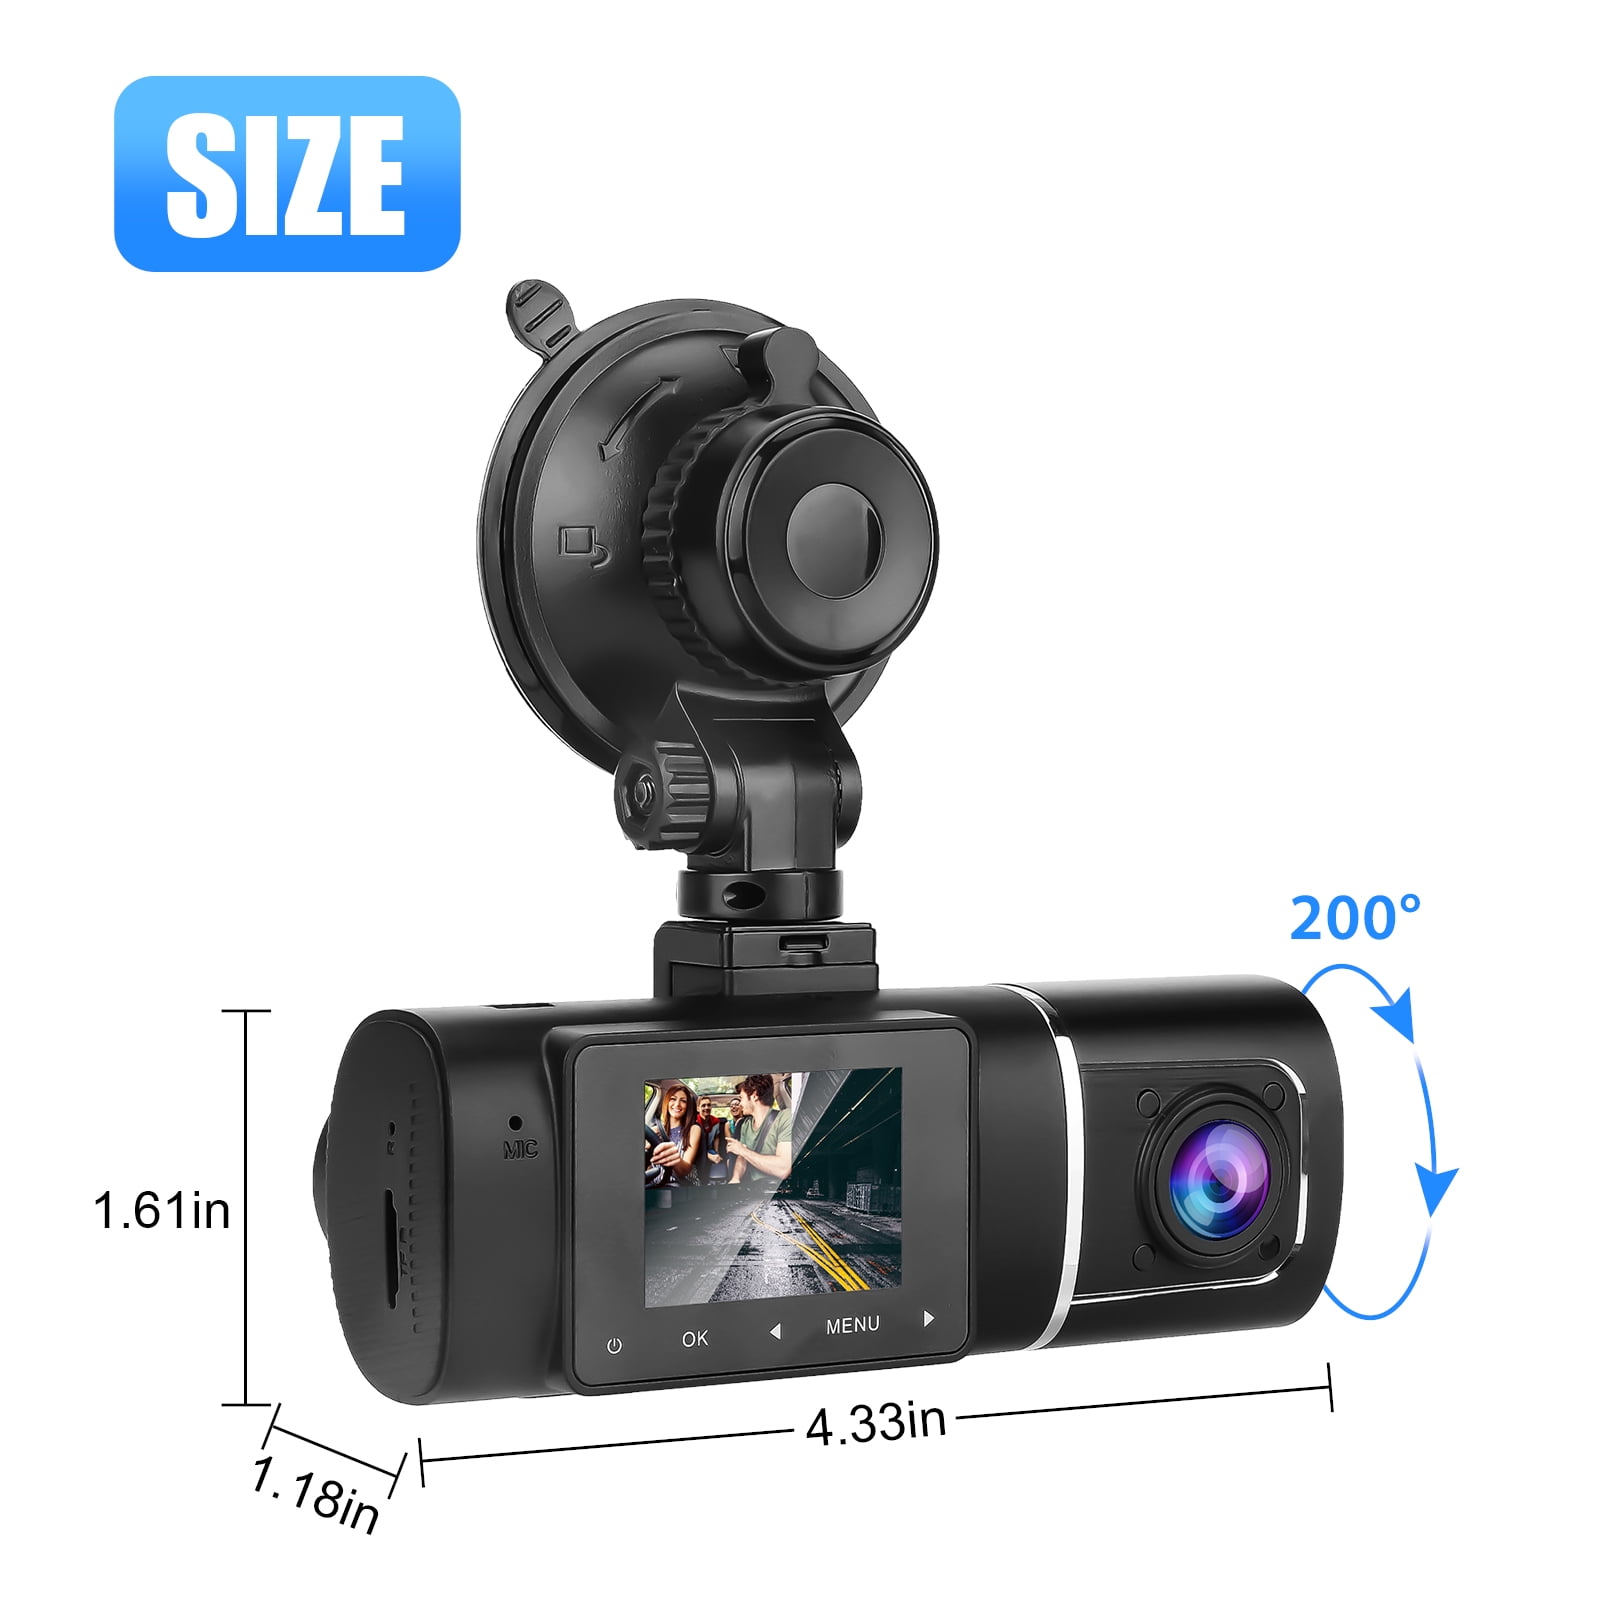 4 170° View 1080P HD Dual Lens Car DVR G-sensor Dash Cam Video